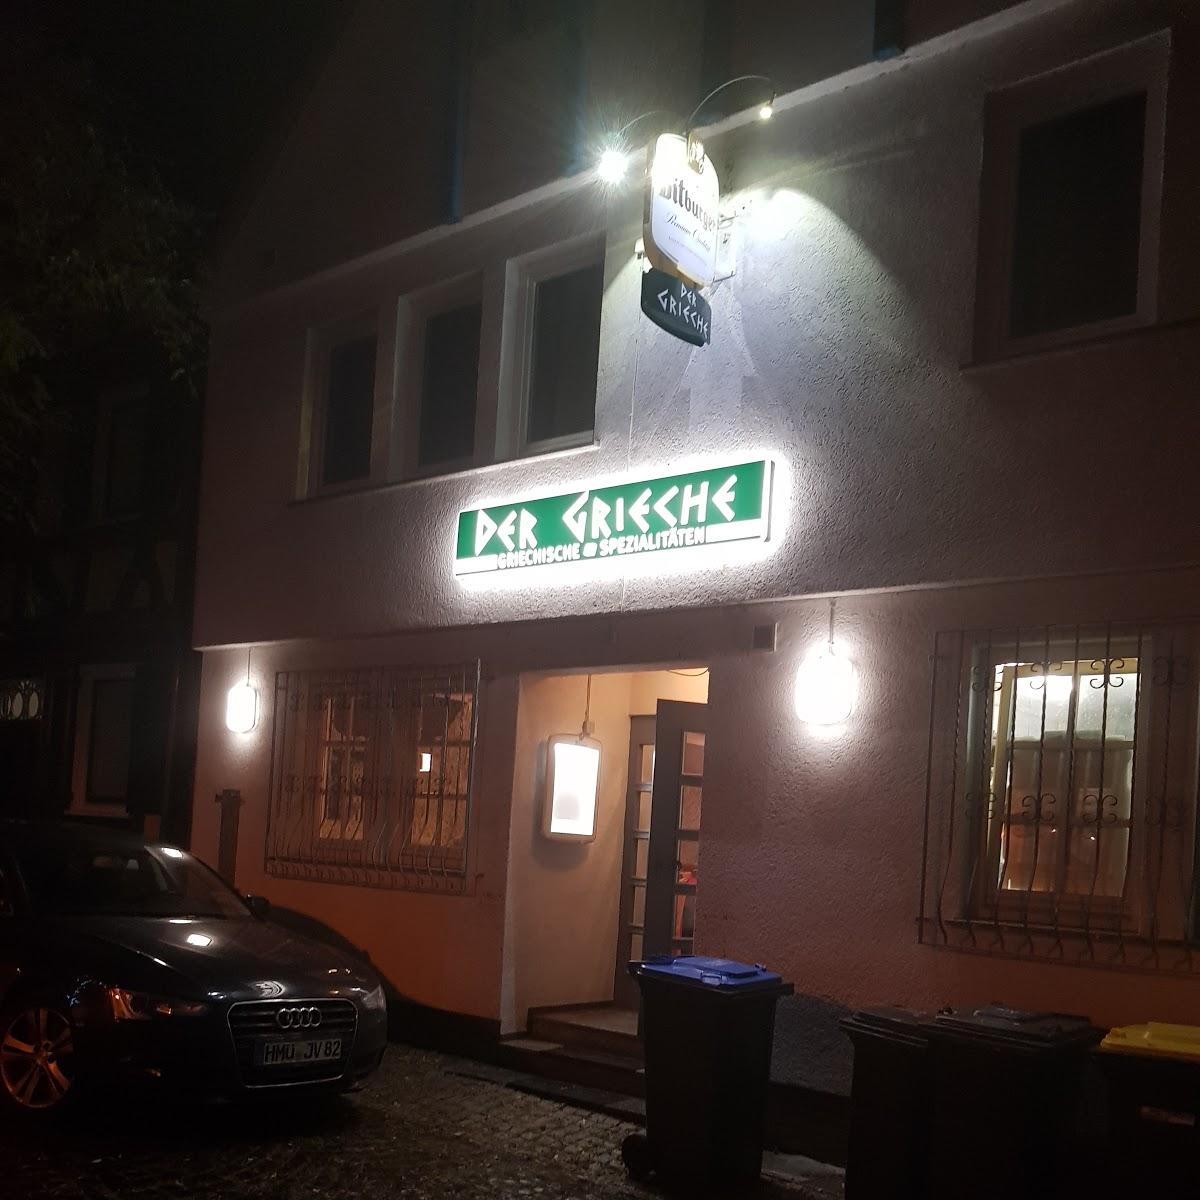 Restaurant "Restaurant Der grieche" in Homberg (Ohm)